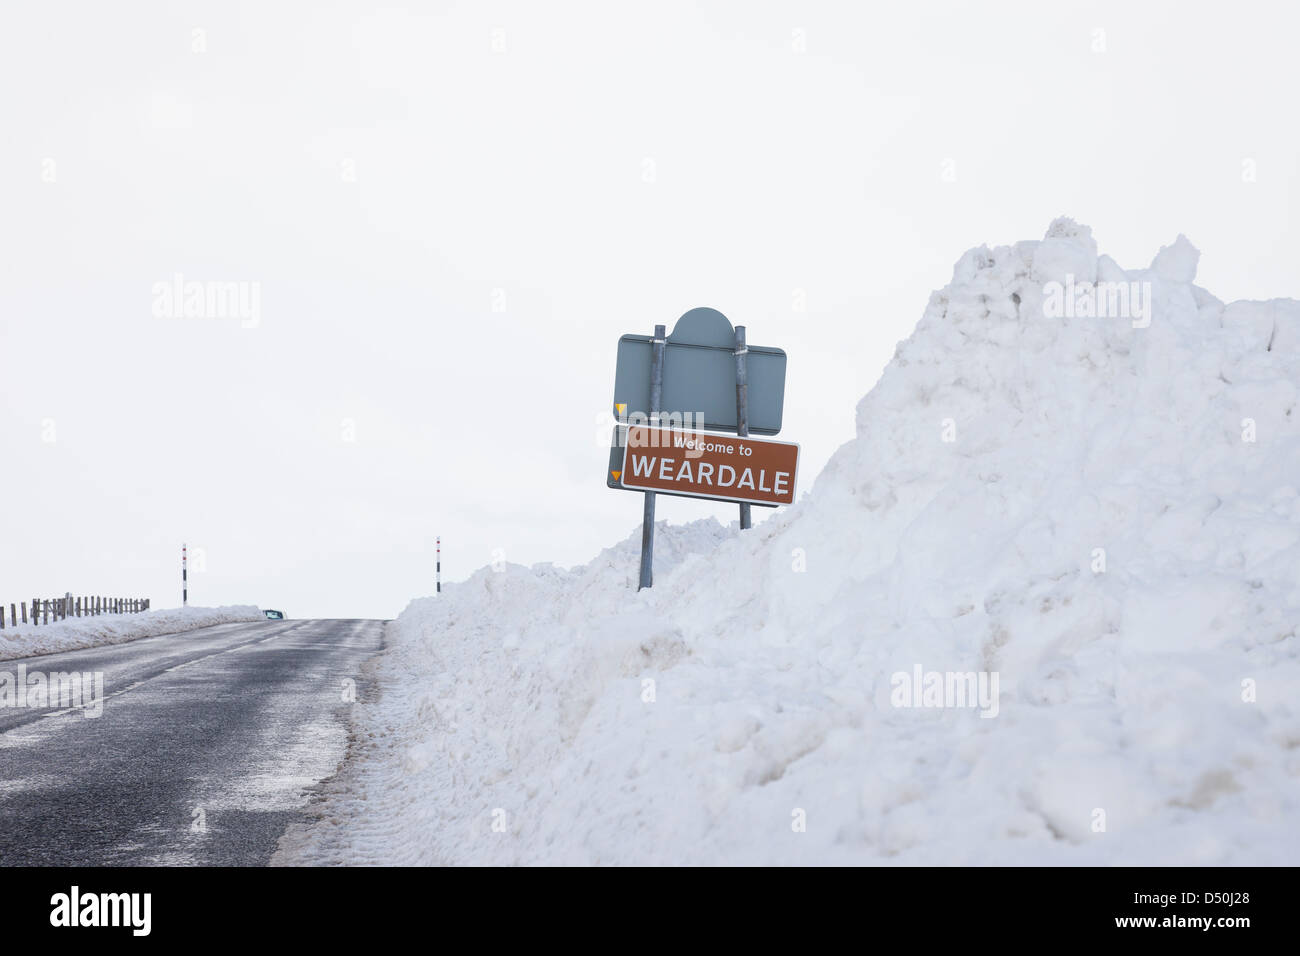 County Durham, Großbritannien. 21. März 2013. Schnee aufwärts gegen ein Schild auf die B6278 an der Teesdale Weardale Grenze in der Grafschaft Durham nach Schneefall. Bildnachweis: David Forster / Alamy Live News Stockfoto